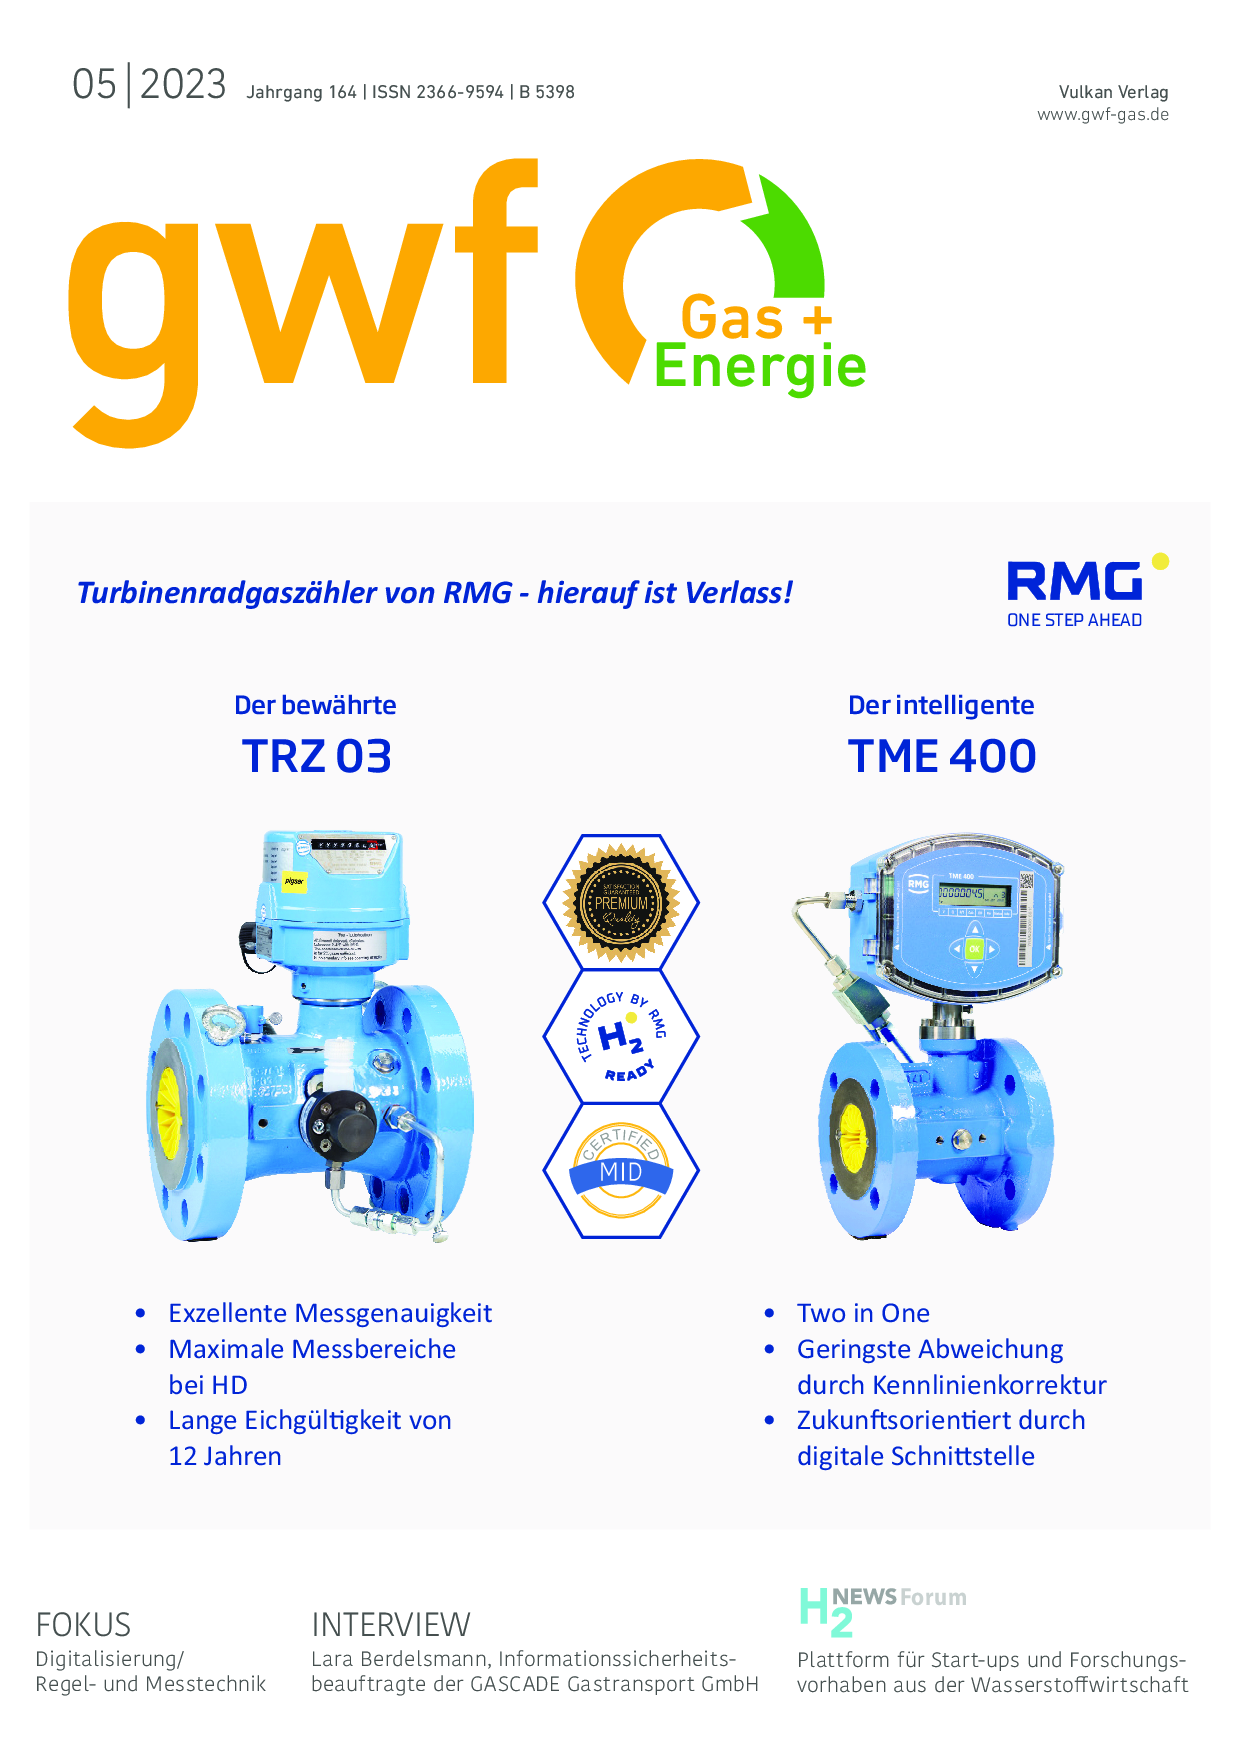 gwf Gas+Energie - 05 2023